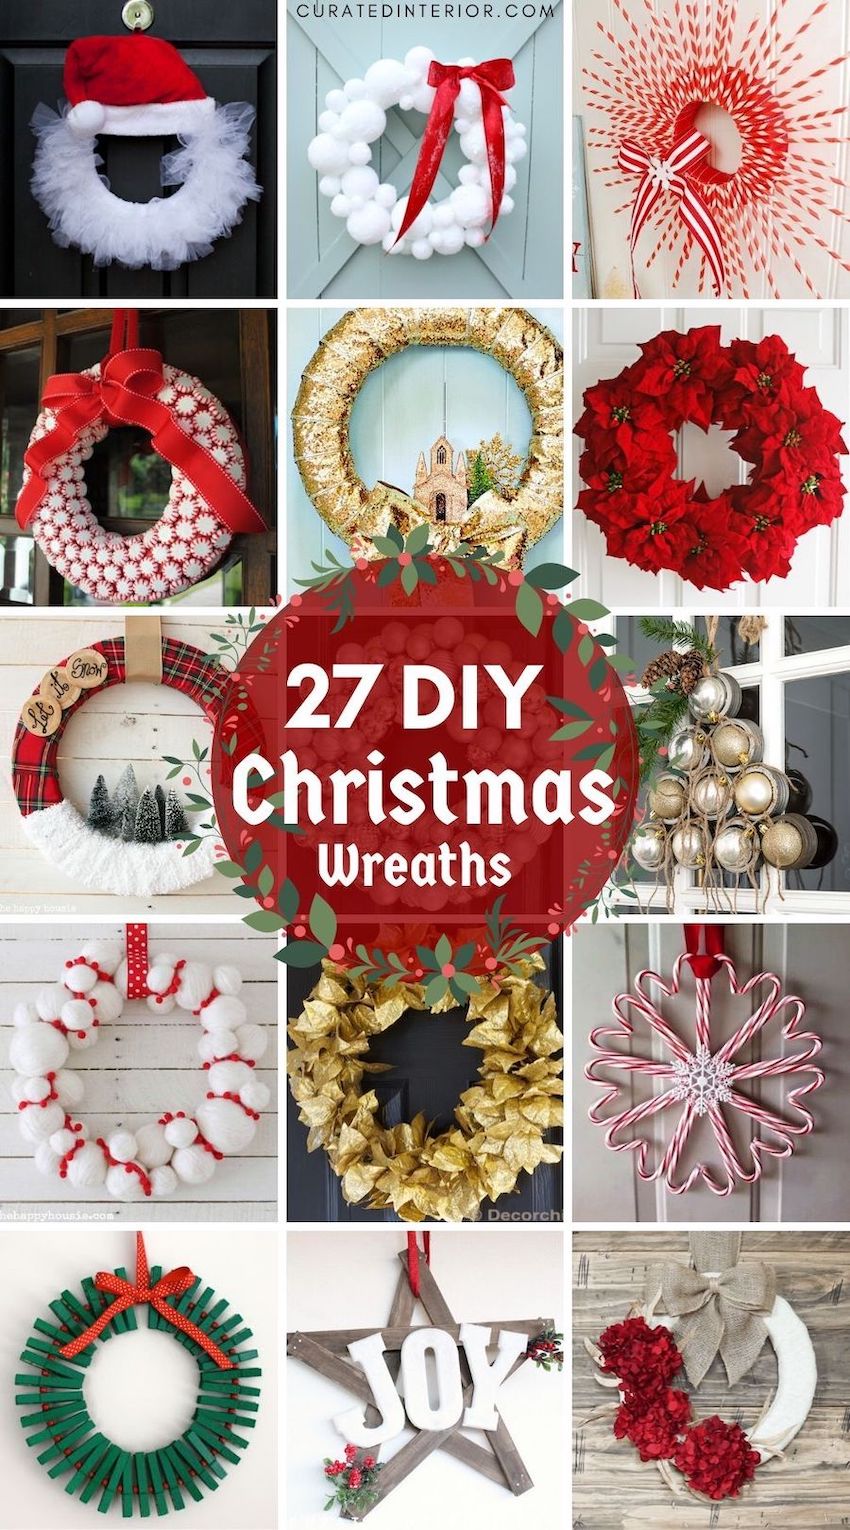 [36+] Easy Diy Christmas Wreath Ideas